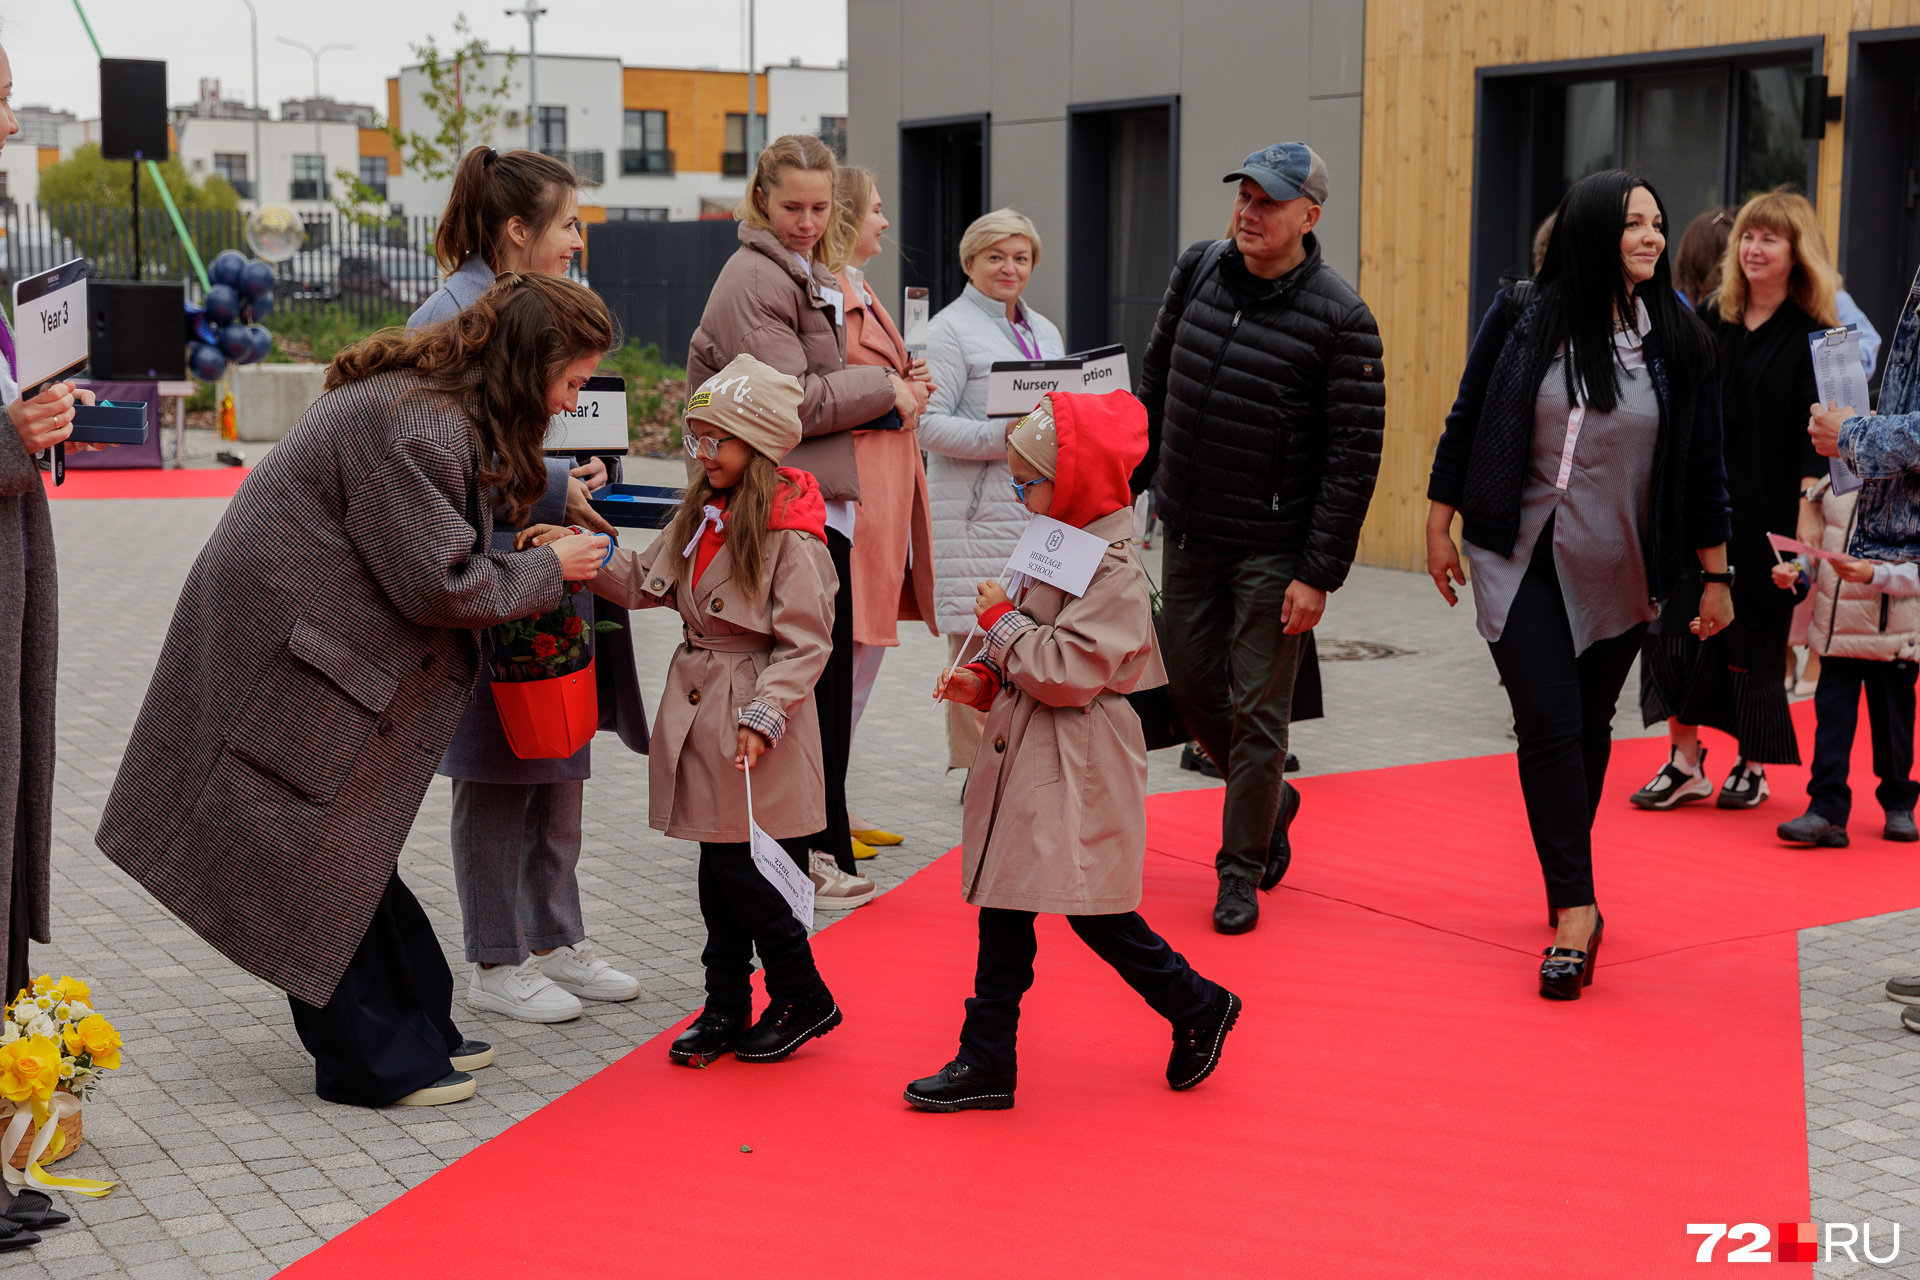 Детей и их родителей встречали на красной ковровой дорожке. Учителя знакомились с ребятами и собирали их вокруг себя